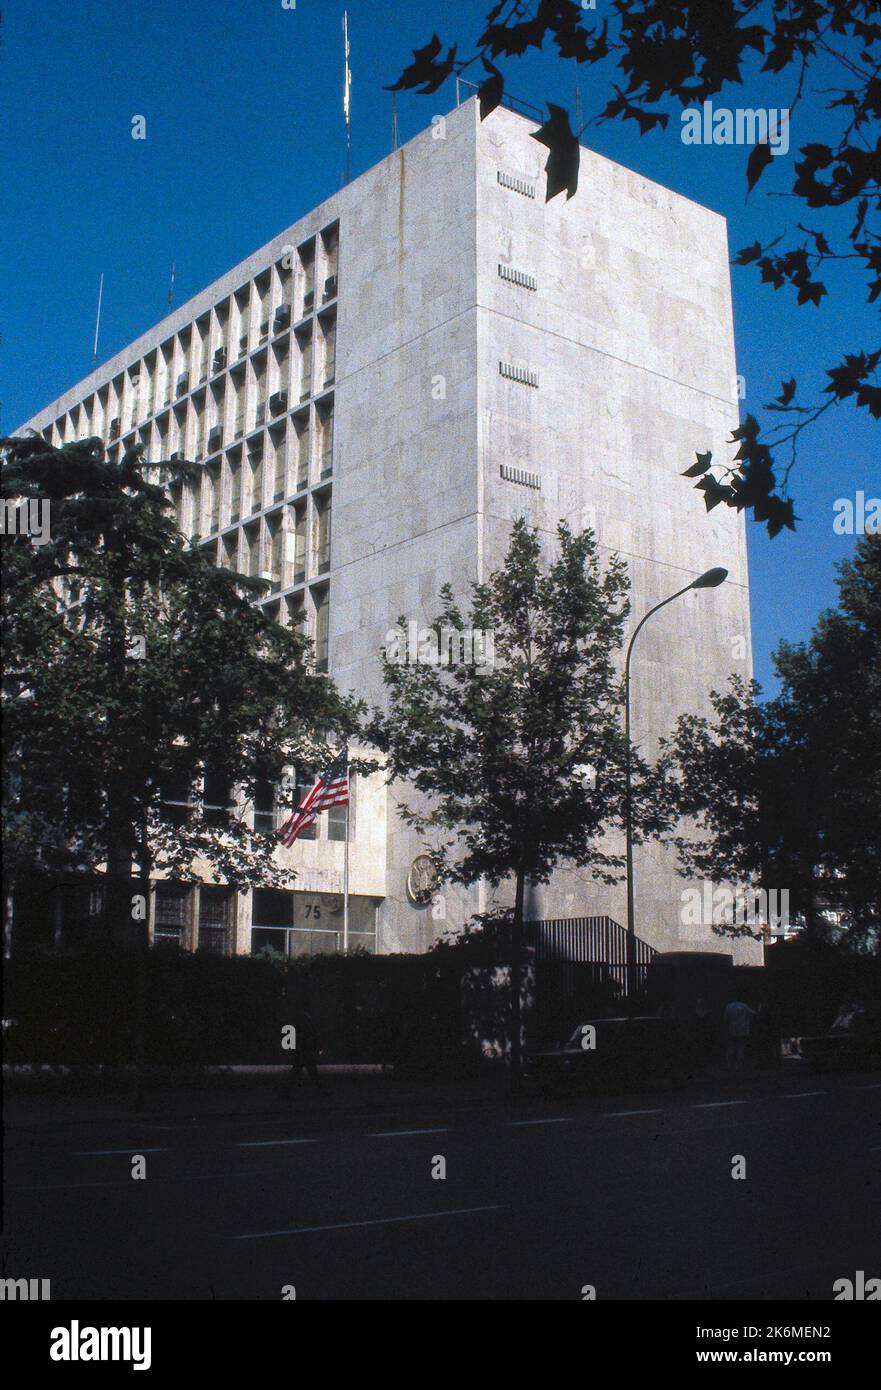 Madrid - Chancery Office Building - 1982, fotografie degli Stati Uniti relative a ambasciate, consolati e altri edifici d'oltremare Foto Stock